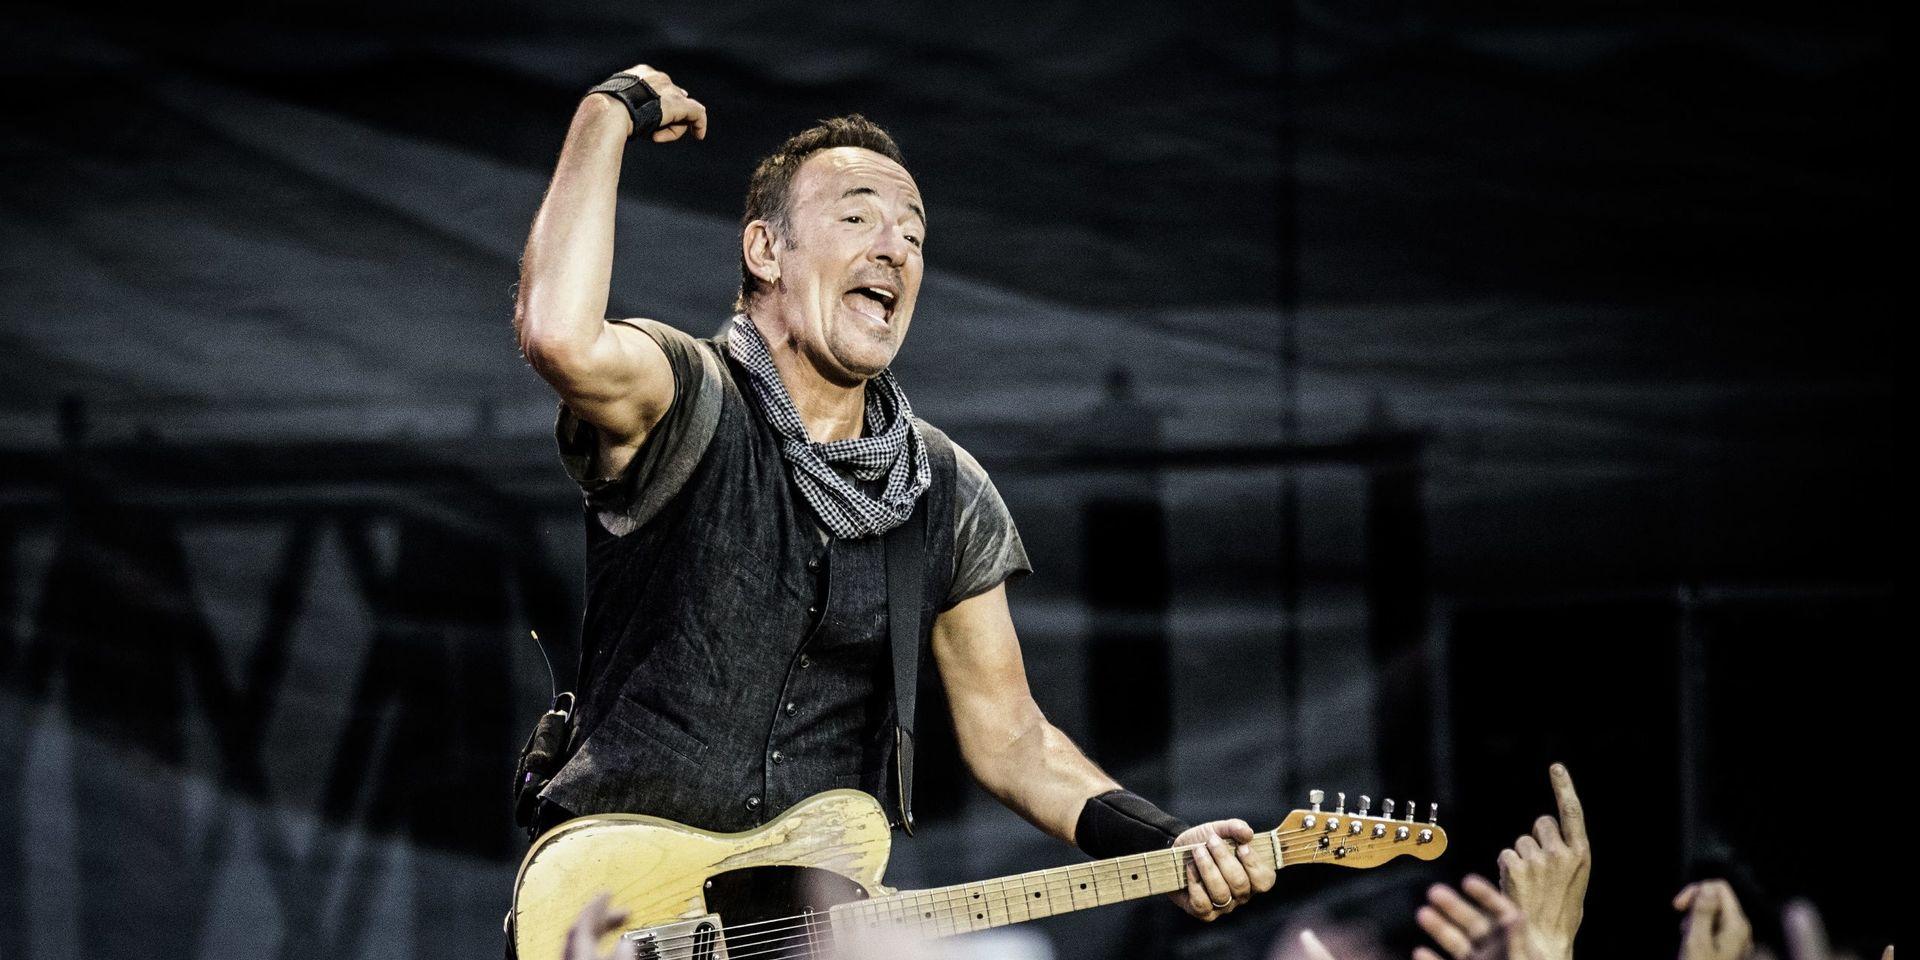 Den ömsesidiga kärleken mellan en artist och publiken är något väldigt speciellt. Bruce Springsteen på Ullevi 2016.